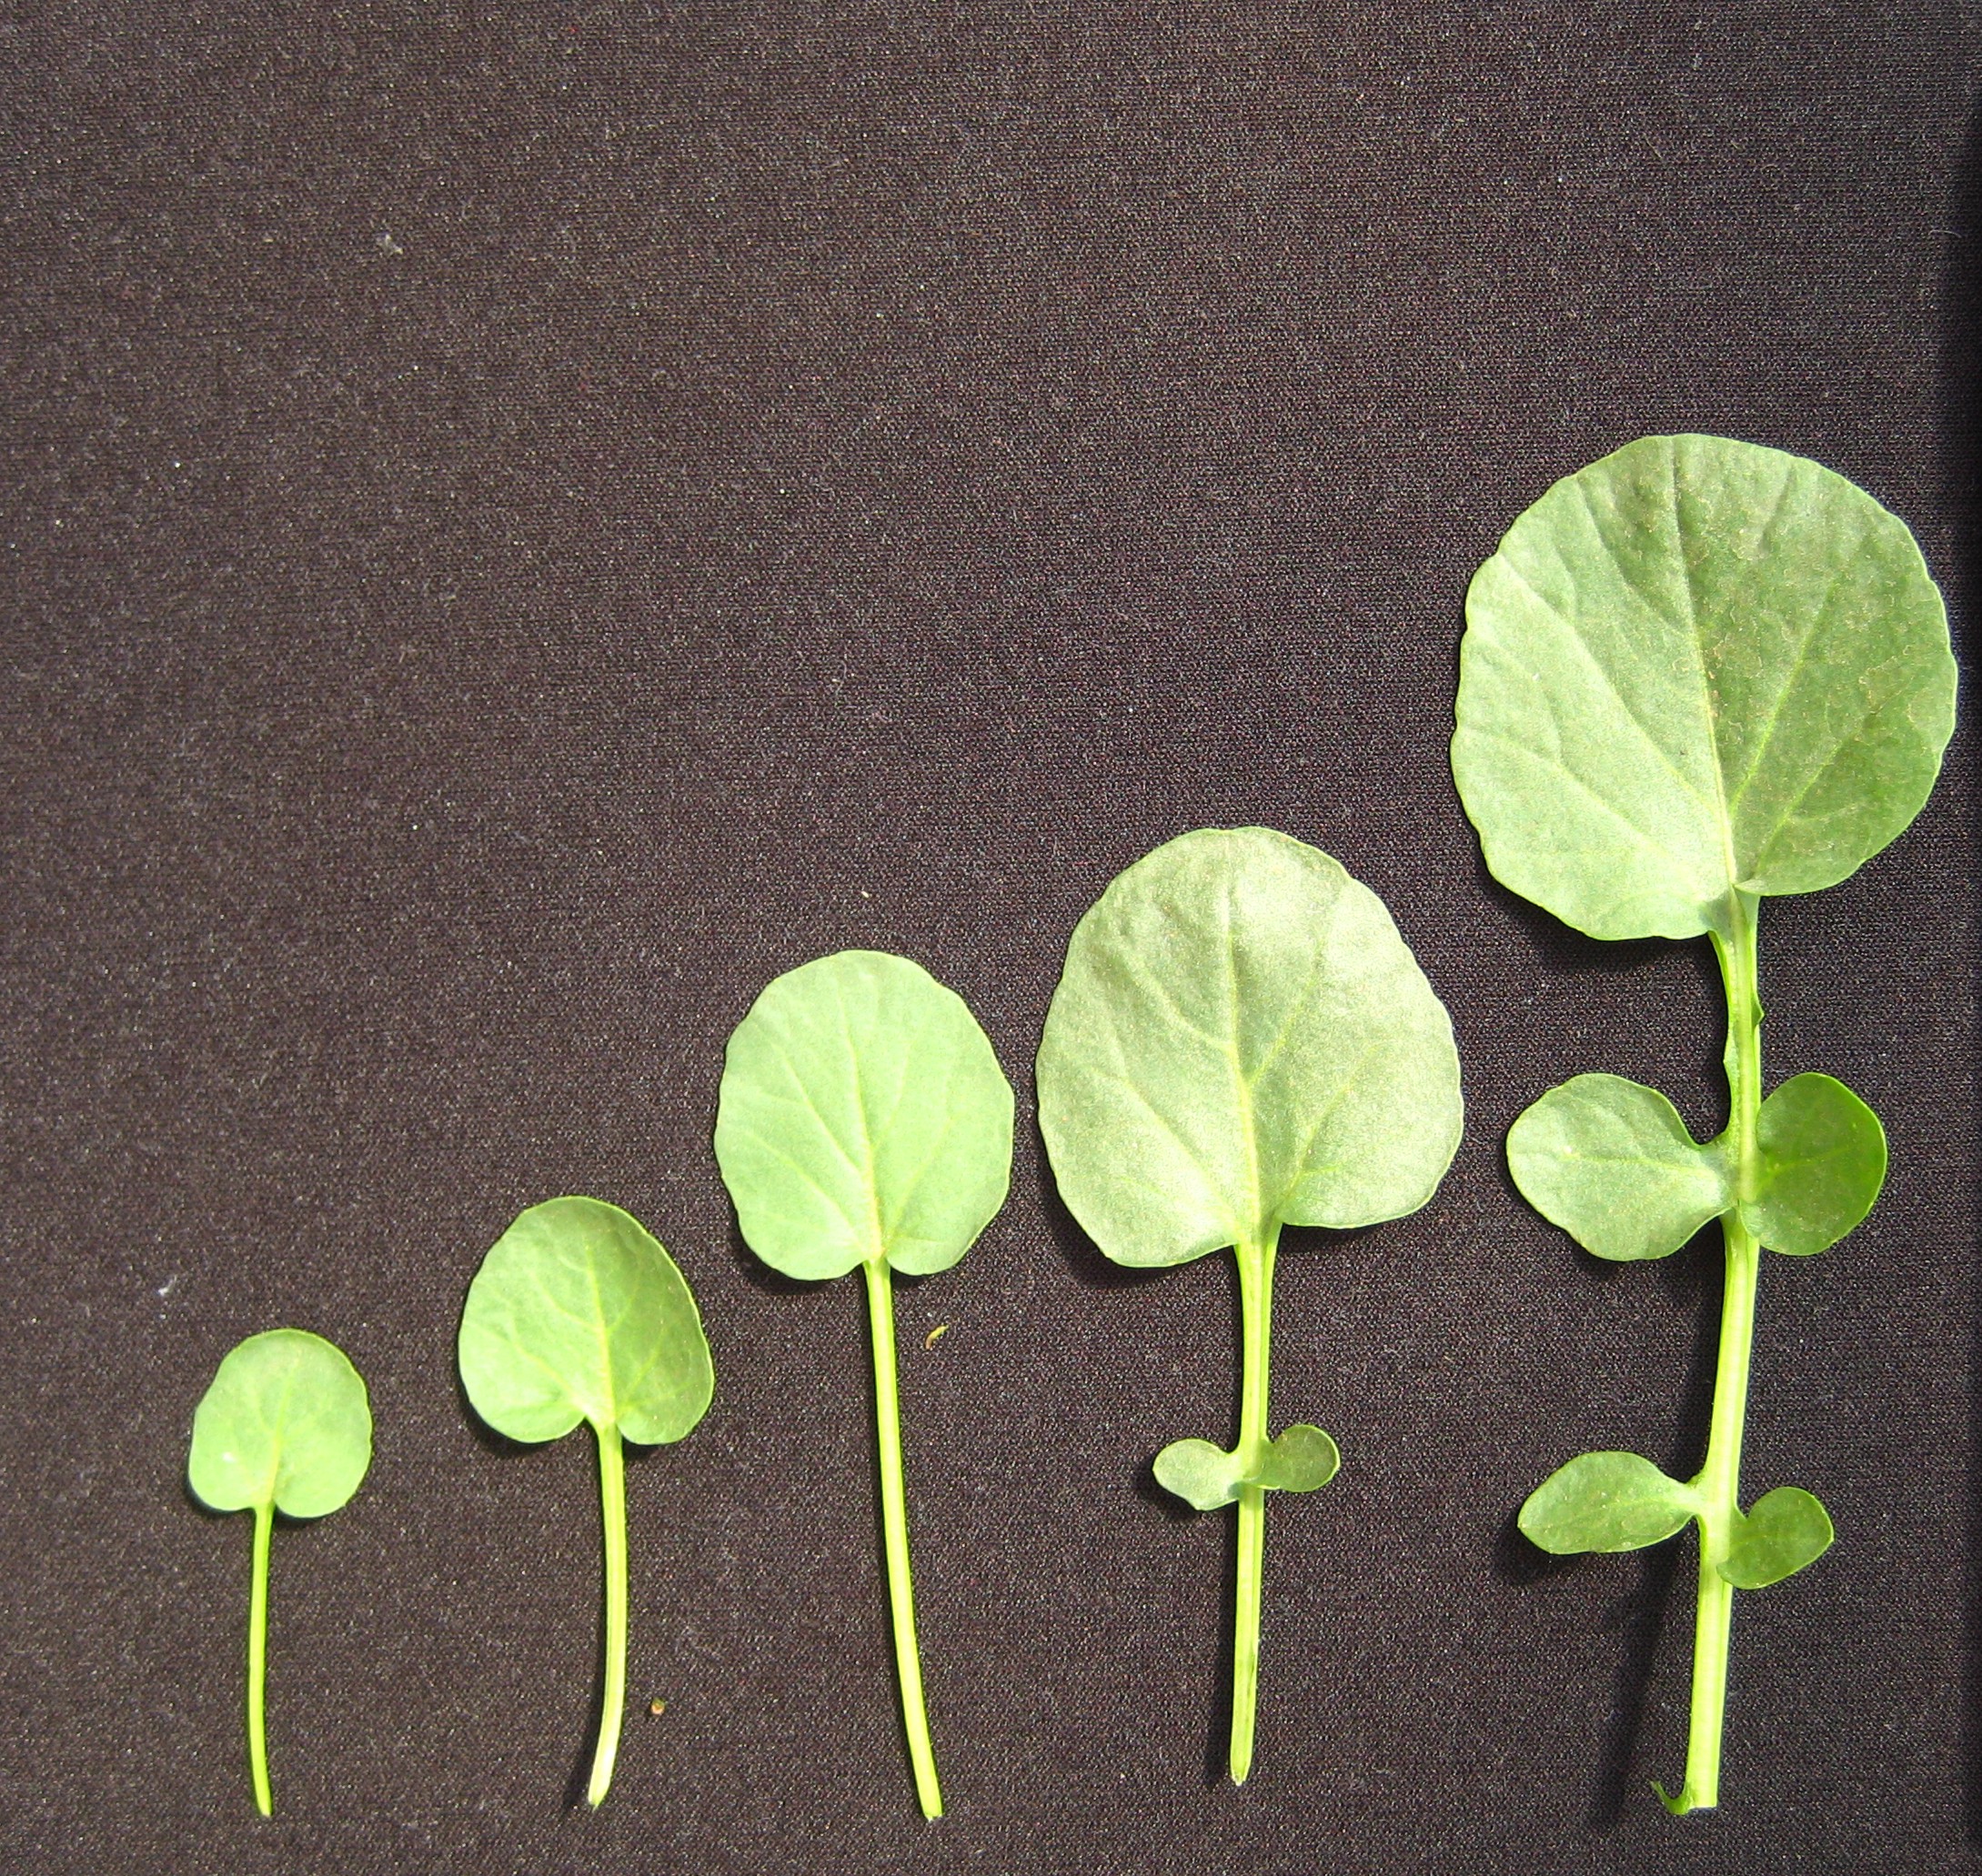 Detalhe de baby leaf de rúcula com diferentes comprimentos. Instituto Agronômico, Campinas, SP. - Foto: Purquerio LFV.